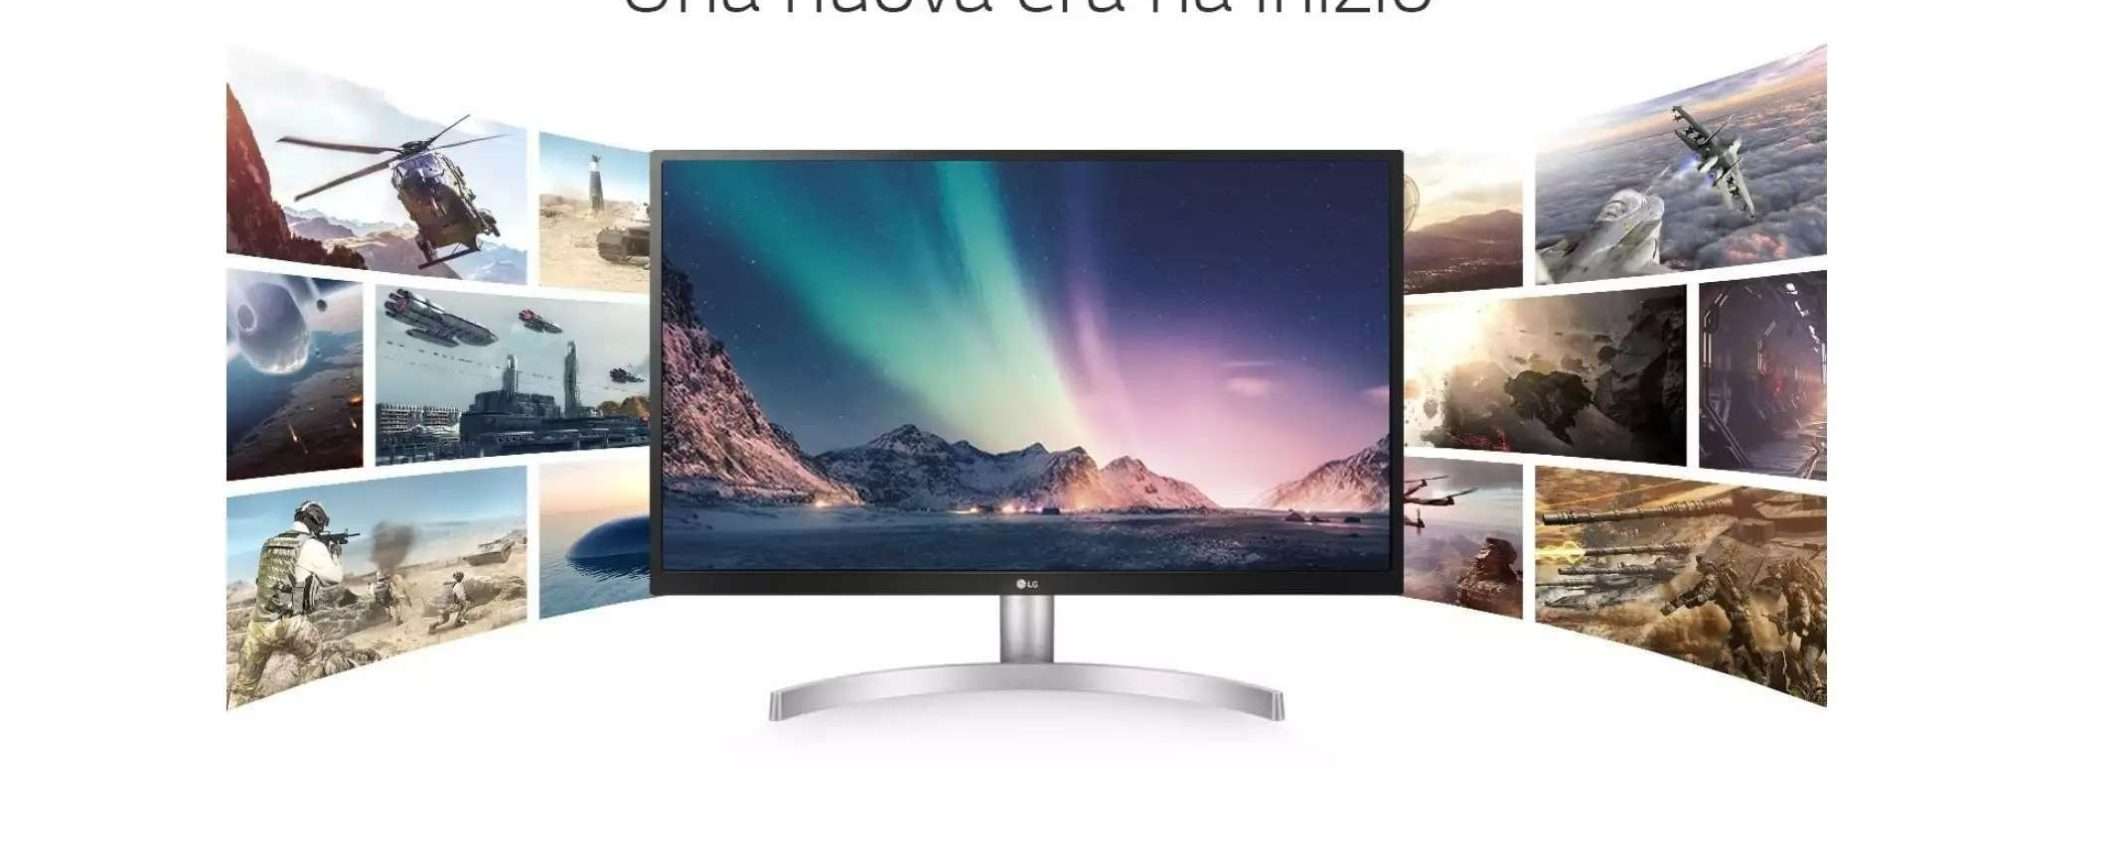 Monitor 4K di LG in offerta a un SUPER PREZZO su Amazon